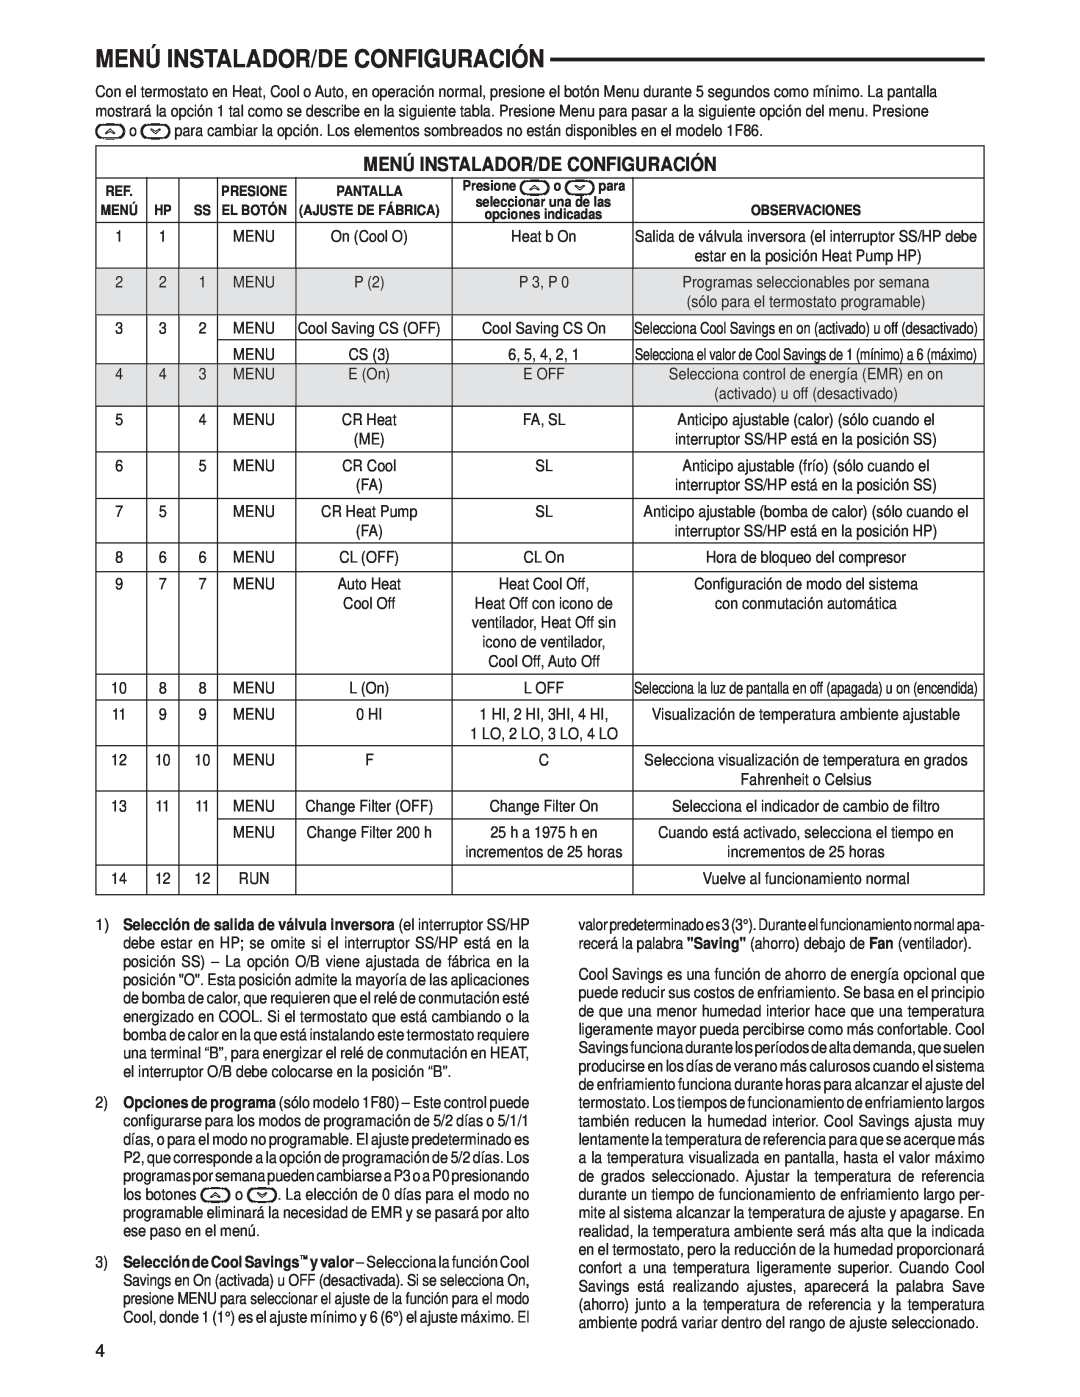 Technics 1F80-0471 specifications Menú Instalador/De Configuración, Presione, Pantalla, para 